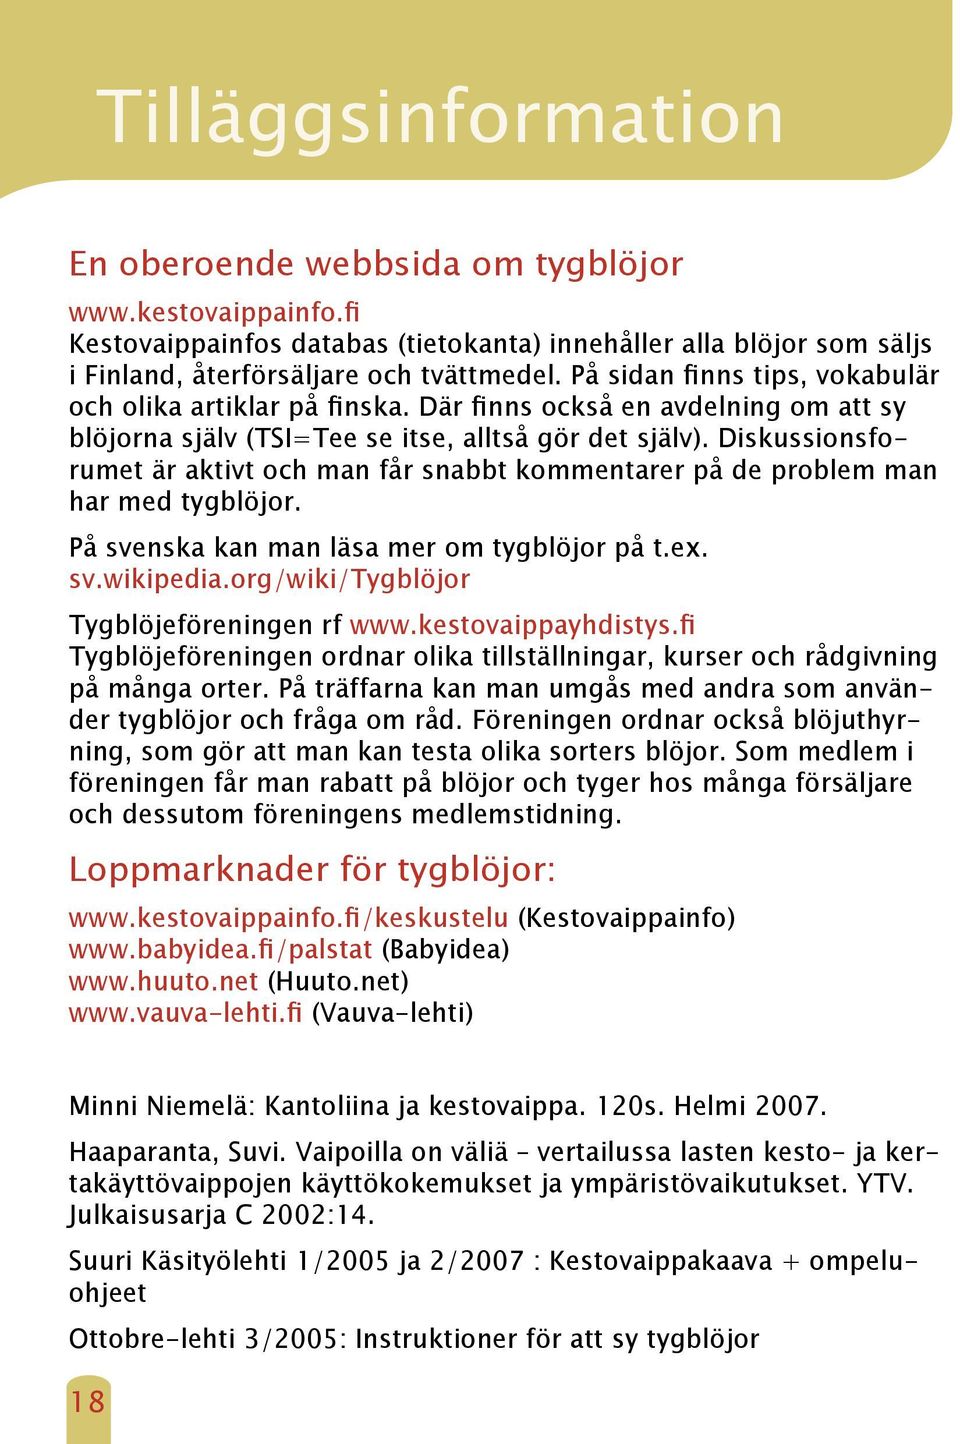 Diskussionsforumet är aktivt och man får snabbt kommentarer på de problem man har med tygblöjor. På svenska kan man läsa mer om tygblöjor på t.ex. sv.wikipedia.